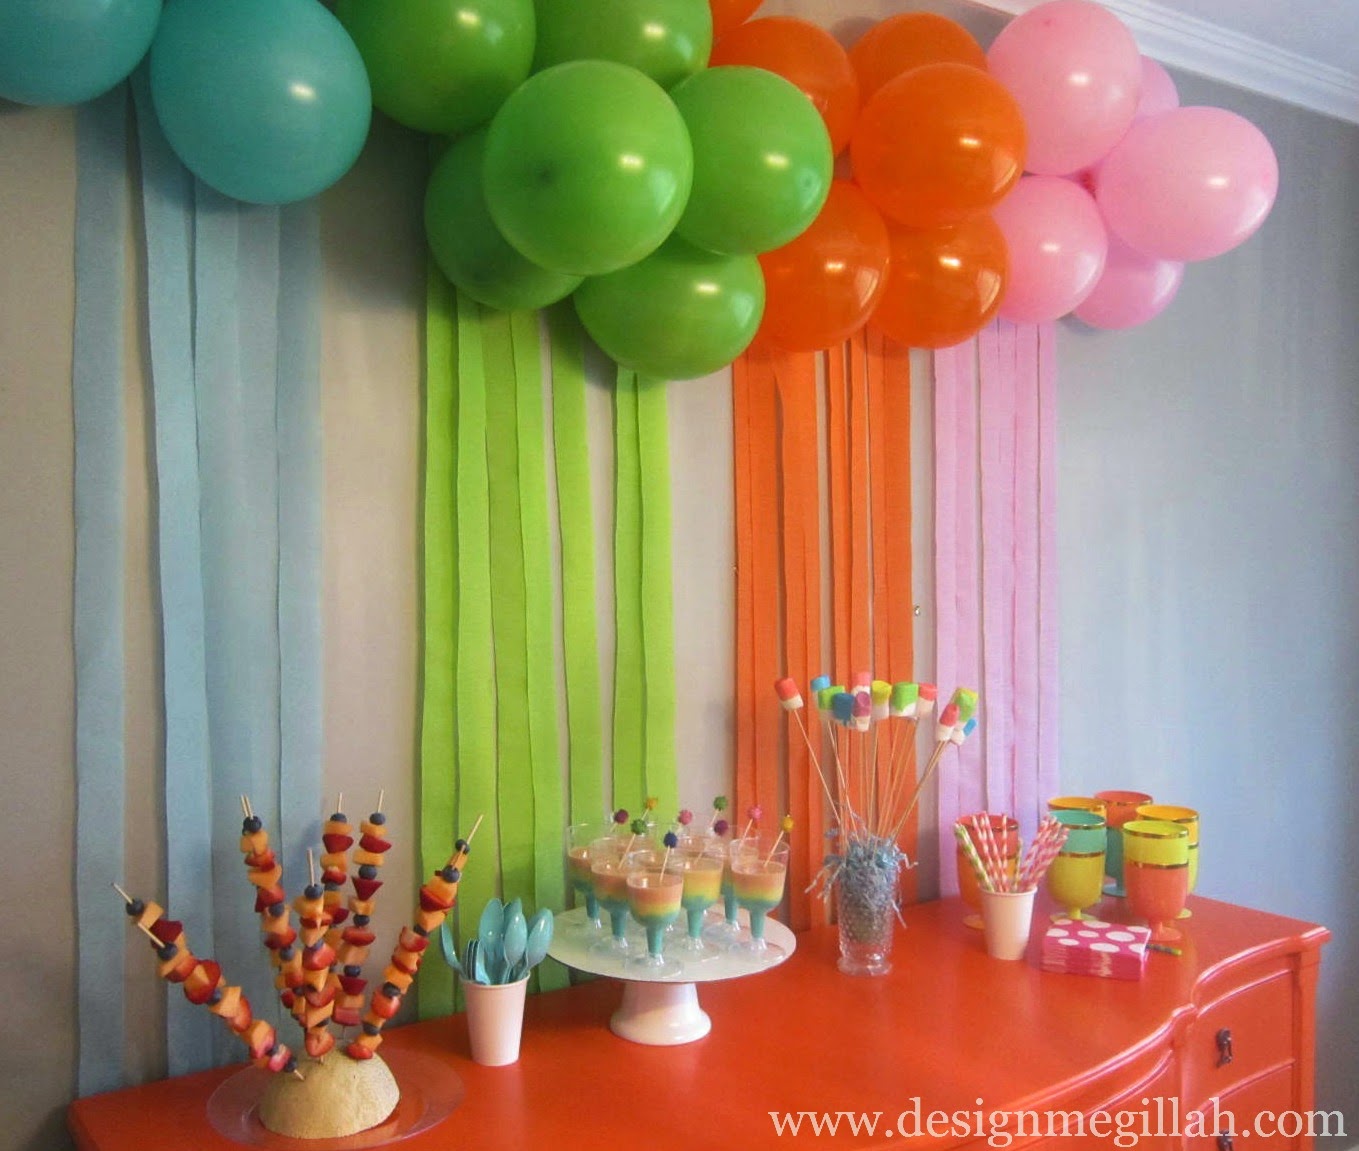 оформление комнаты на день рождения девочки 5 лет